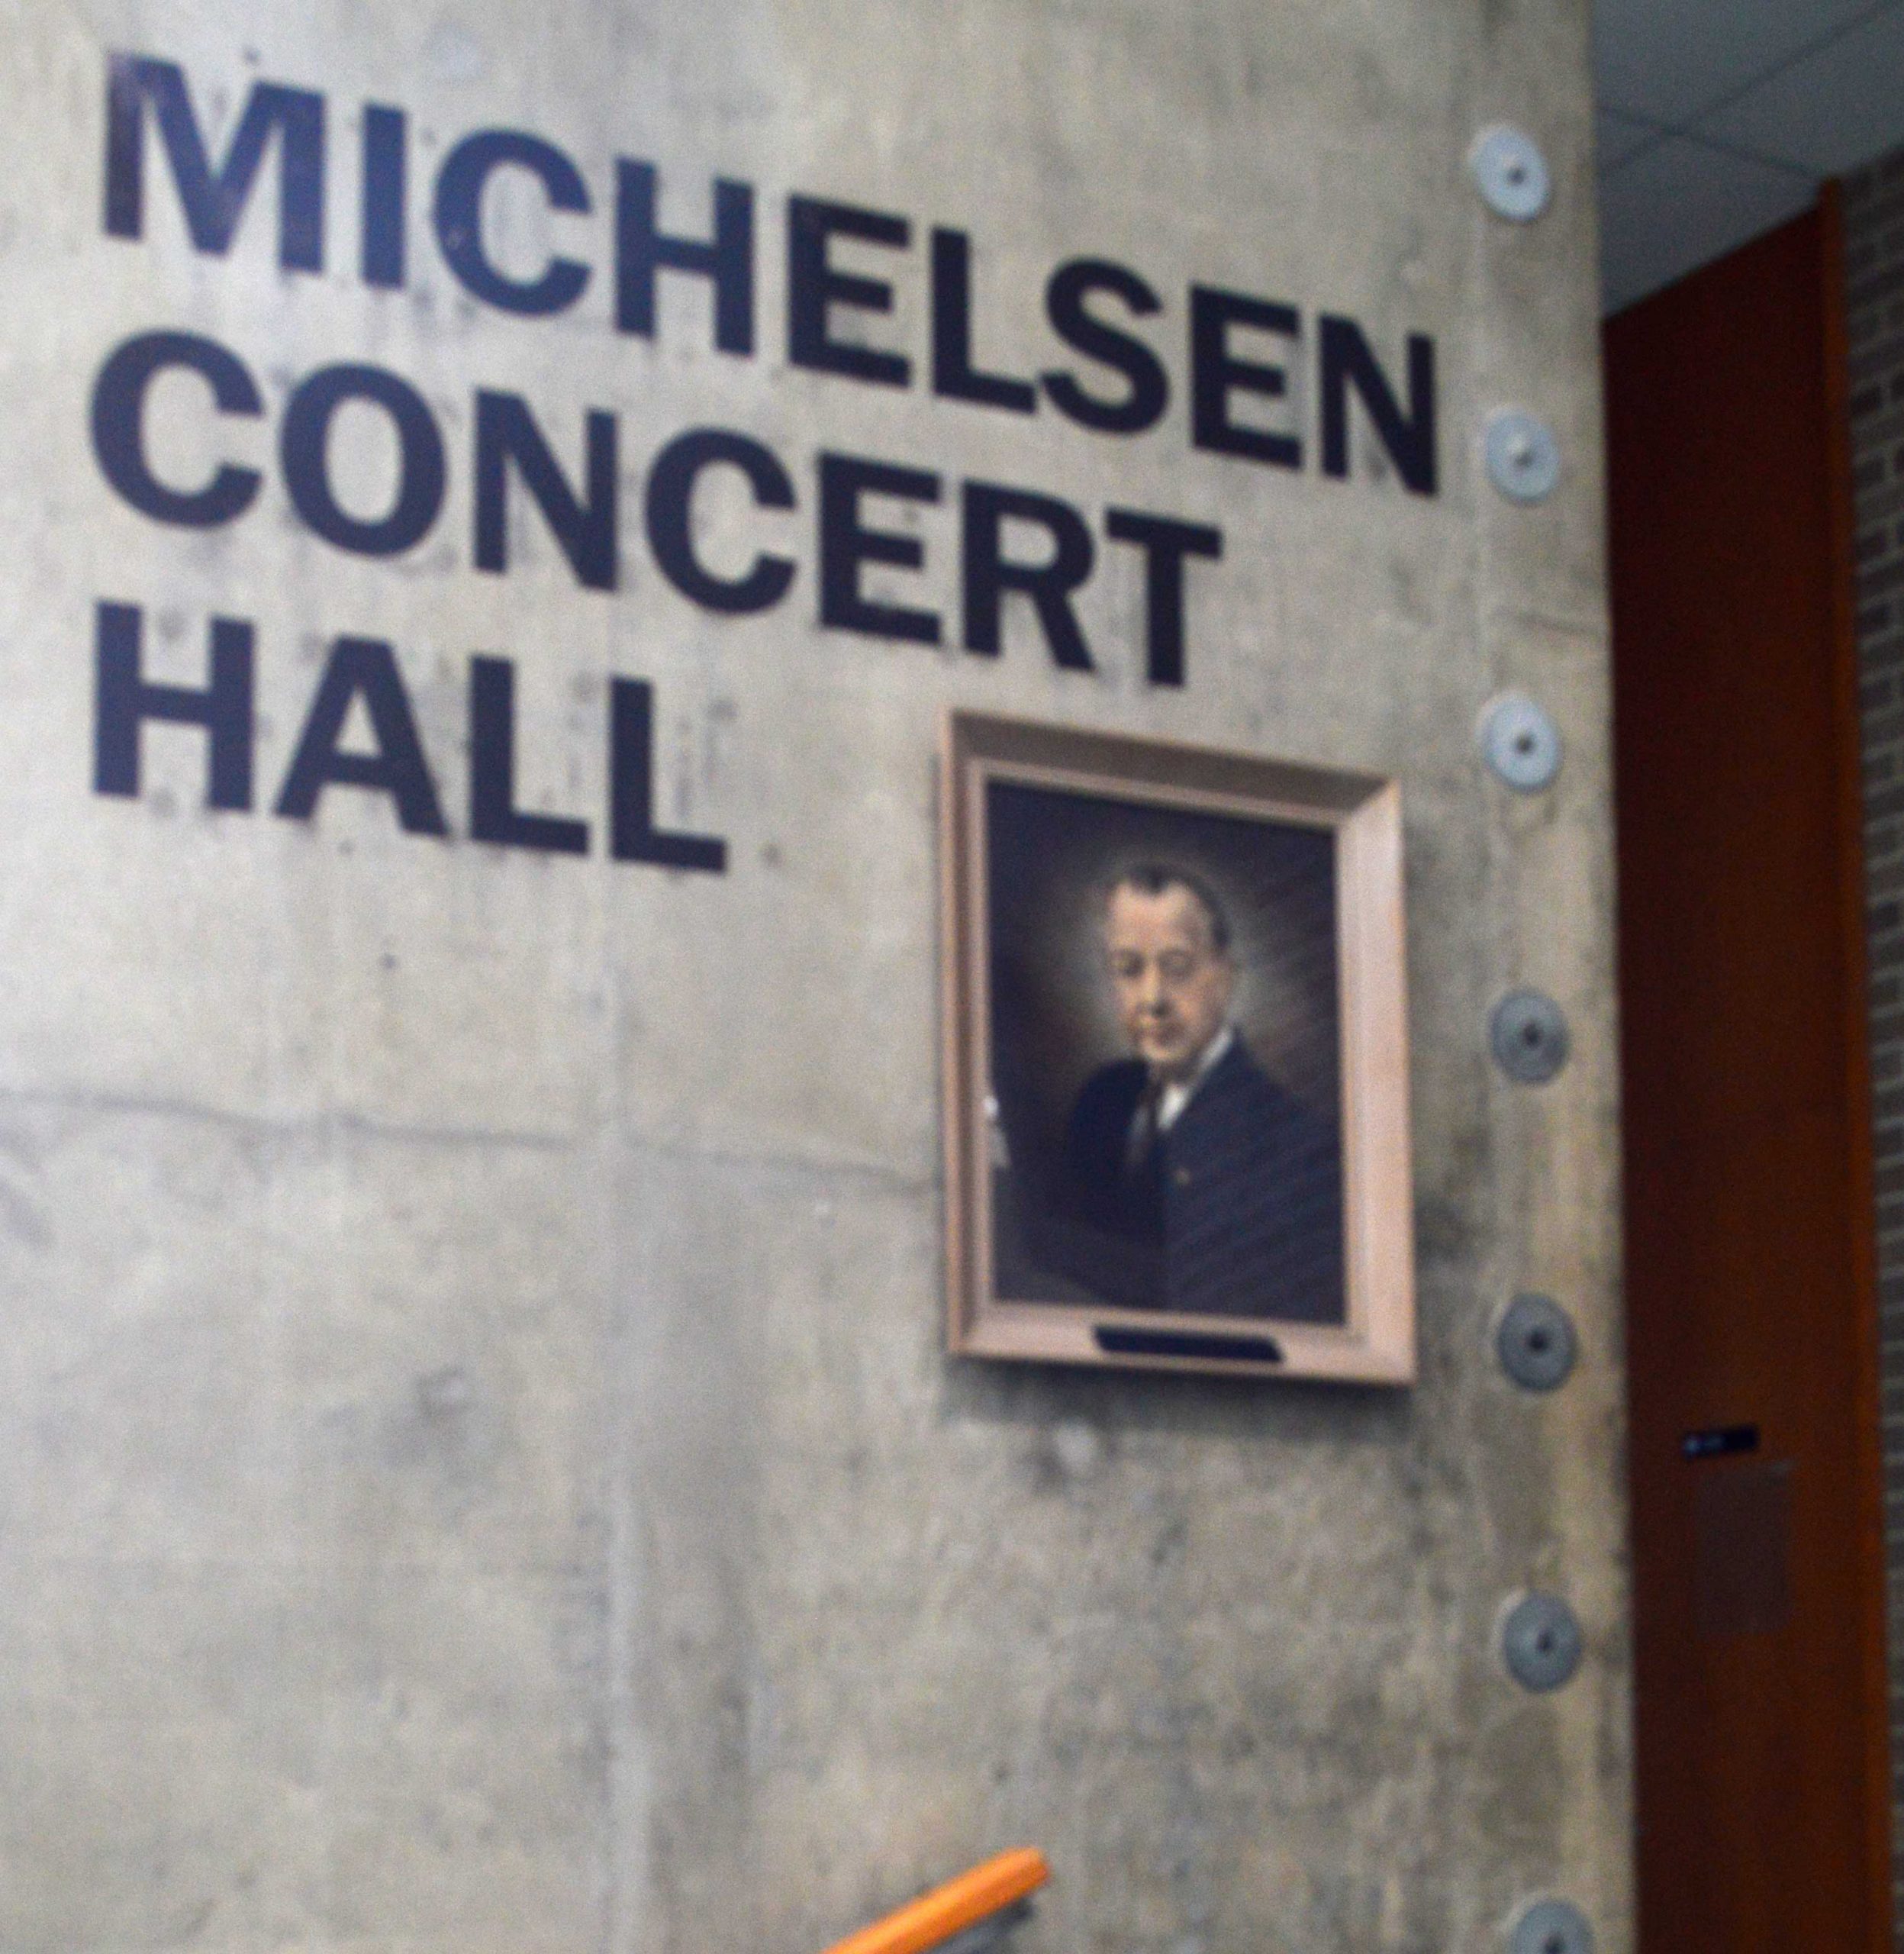 UWSP Michelsen Hall